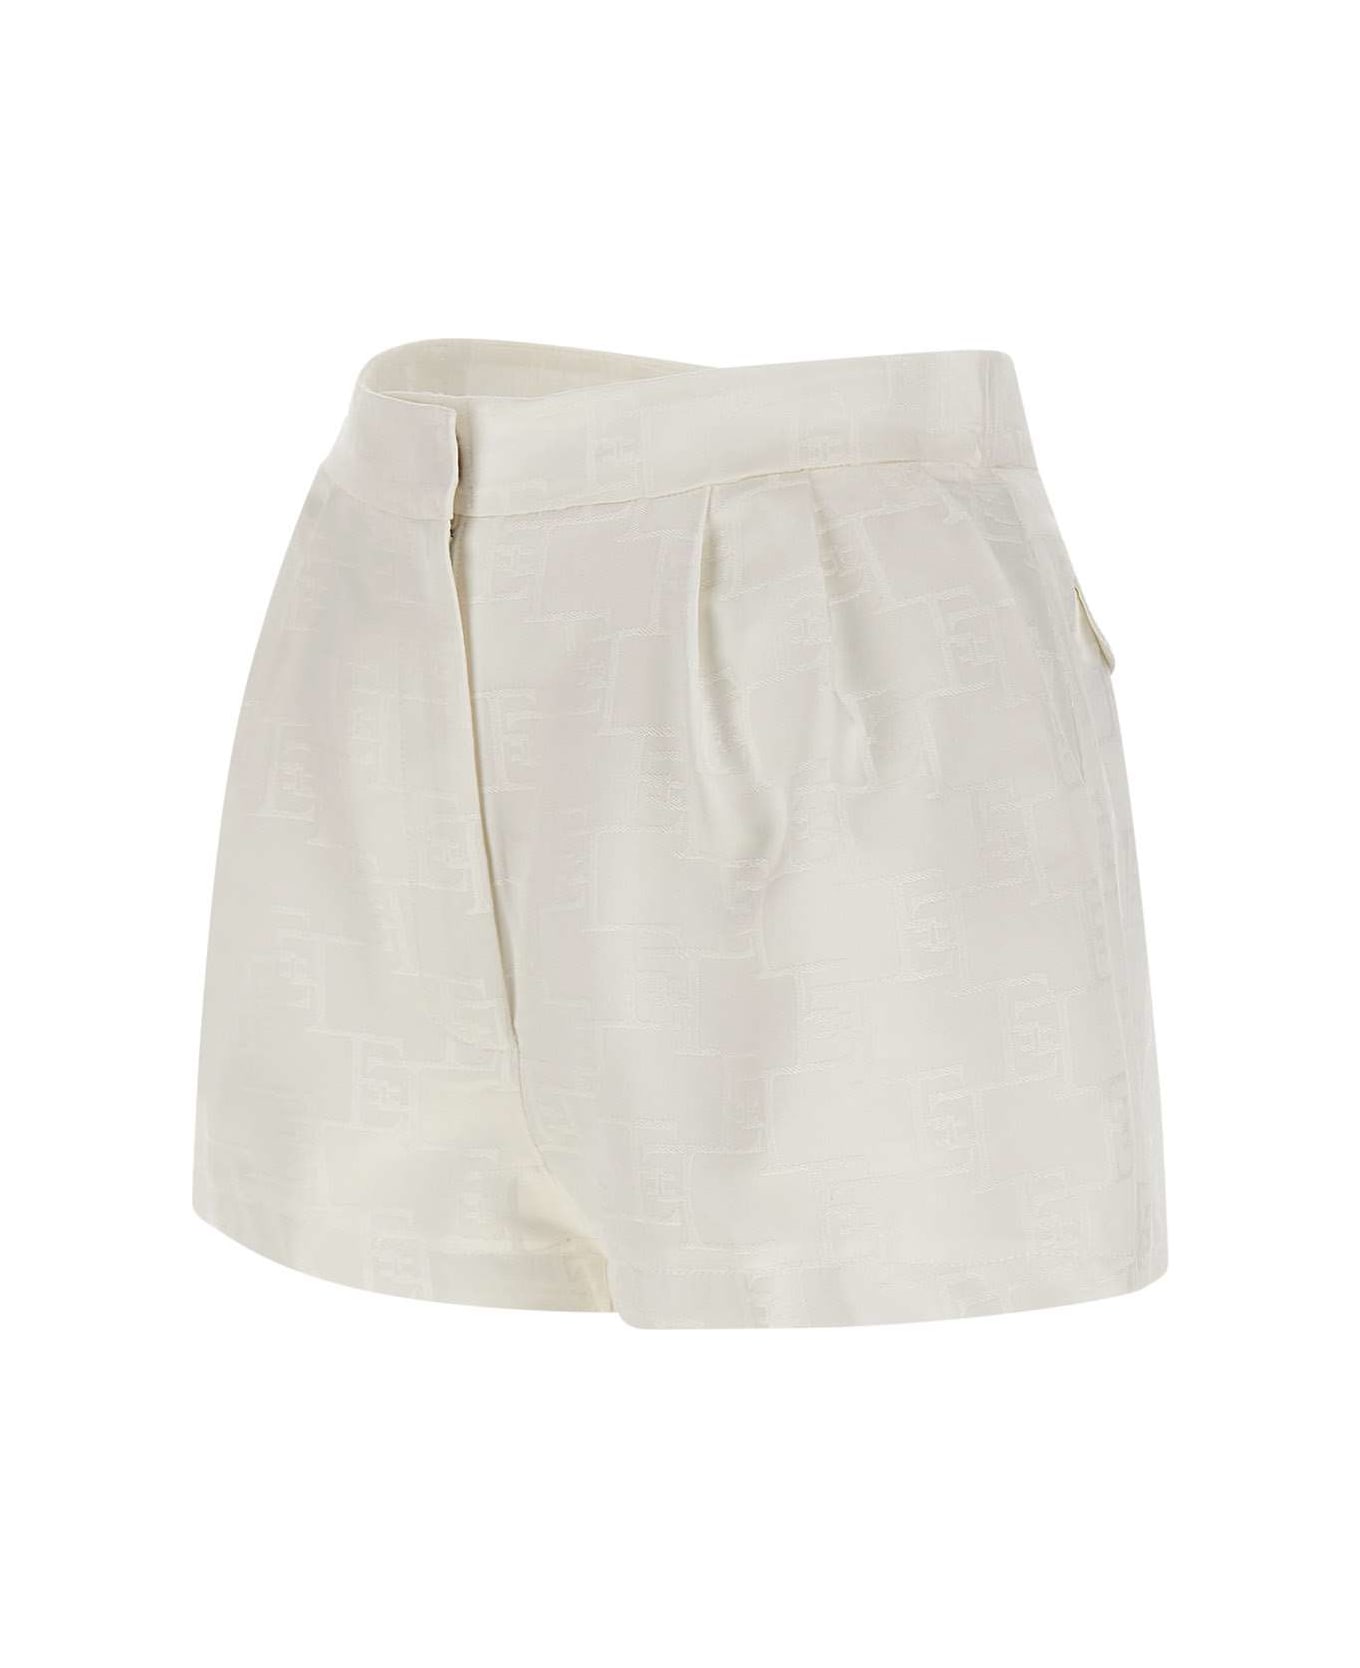 Elisabetta Franchi 'daily' Shorts - WHITE